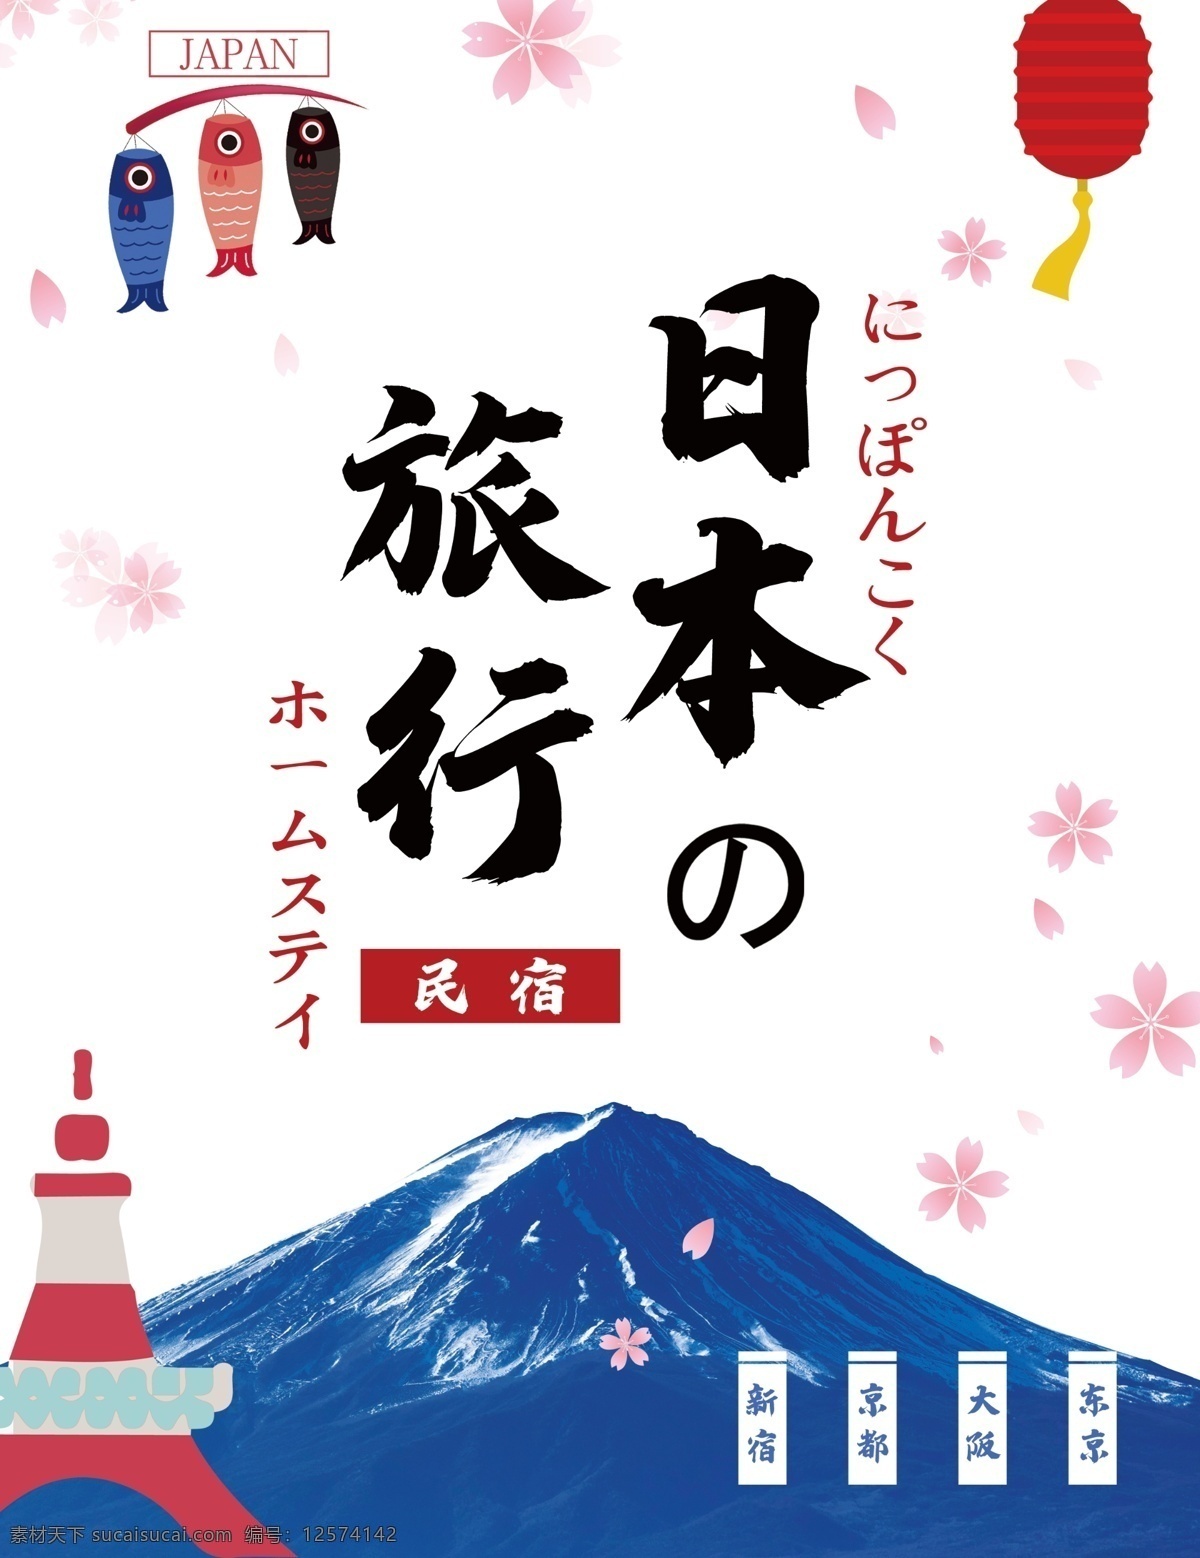 旅游 封面 日本旅游 旅游封面 日本之旅 日本游 画册 日本旅行 旅行 日本